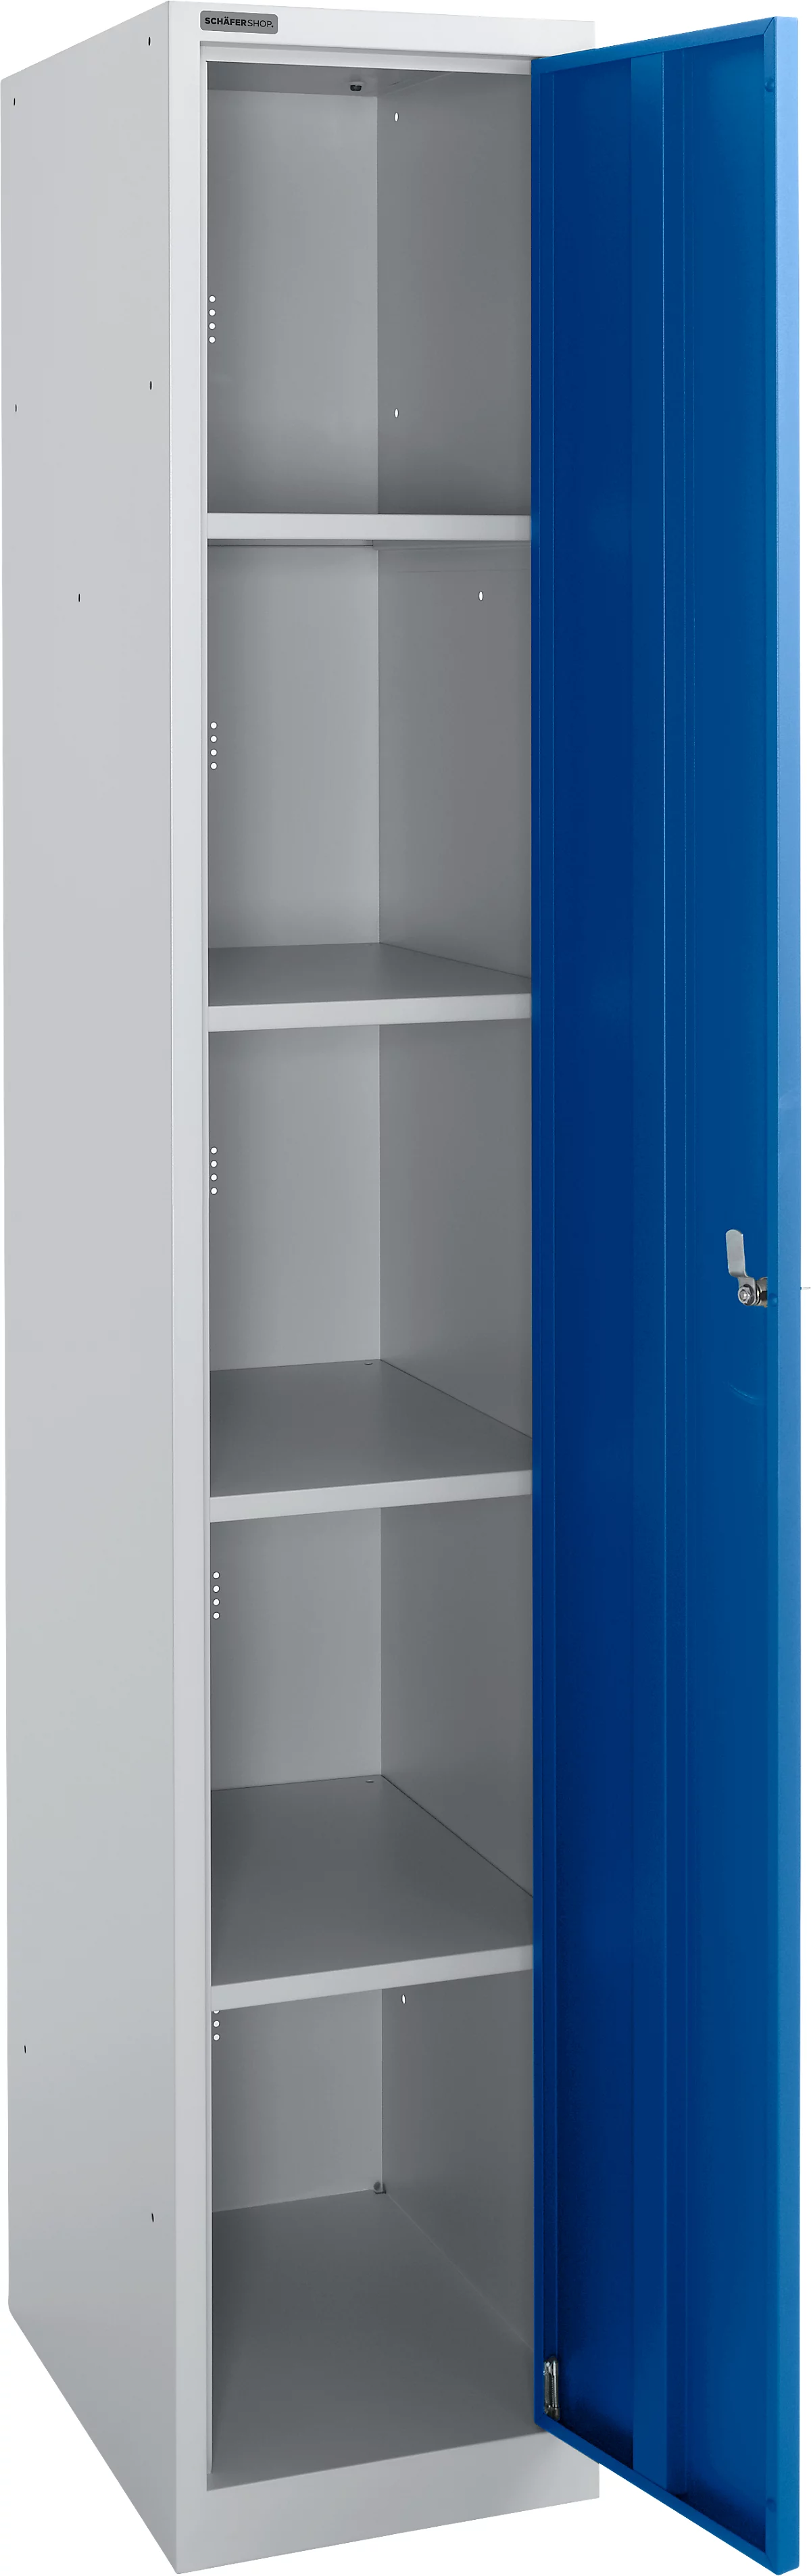 Schäfer Shop Select Garderobenschrank, 1 Abteil mit B 350 mm, 5 Fächer mit 4 Fachböden, abschließbar, weißalu/enzianblau